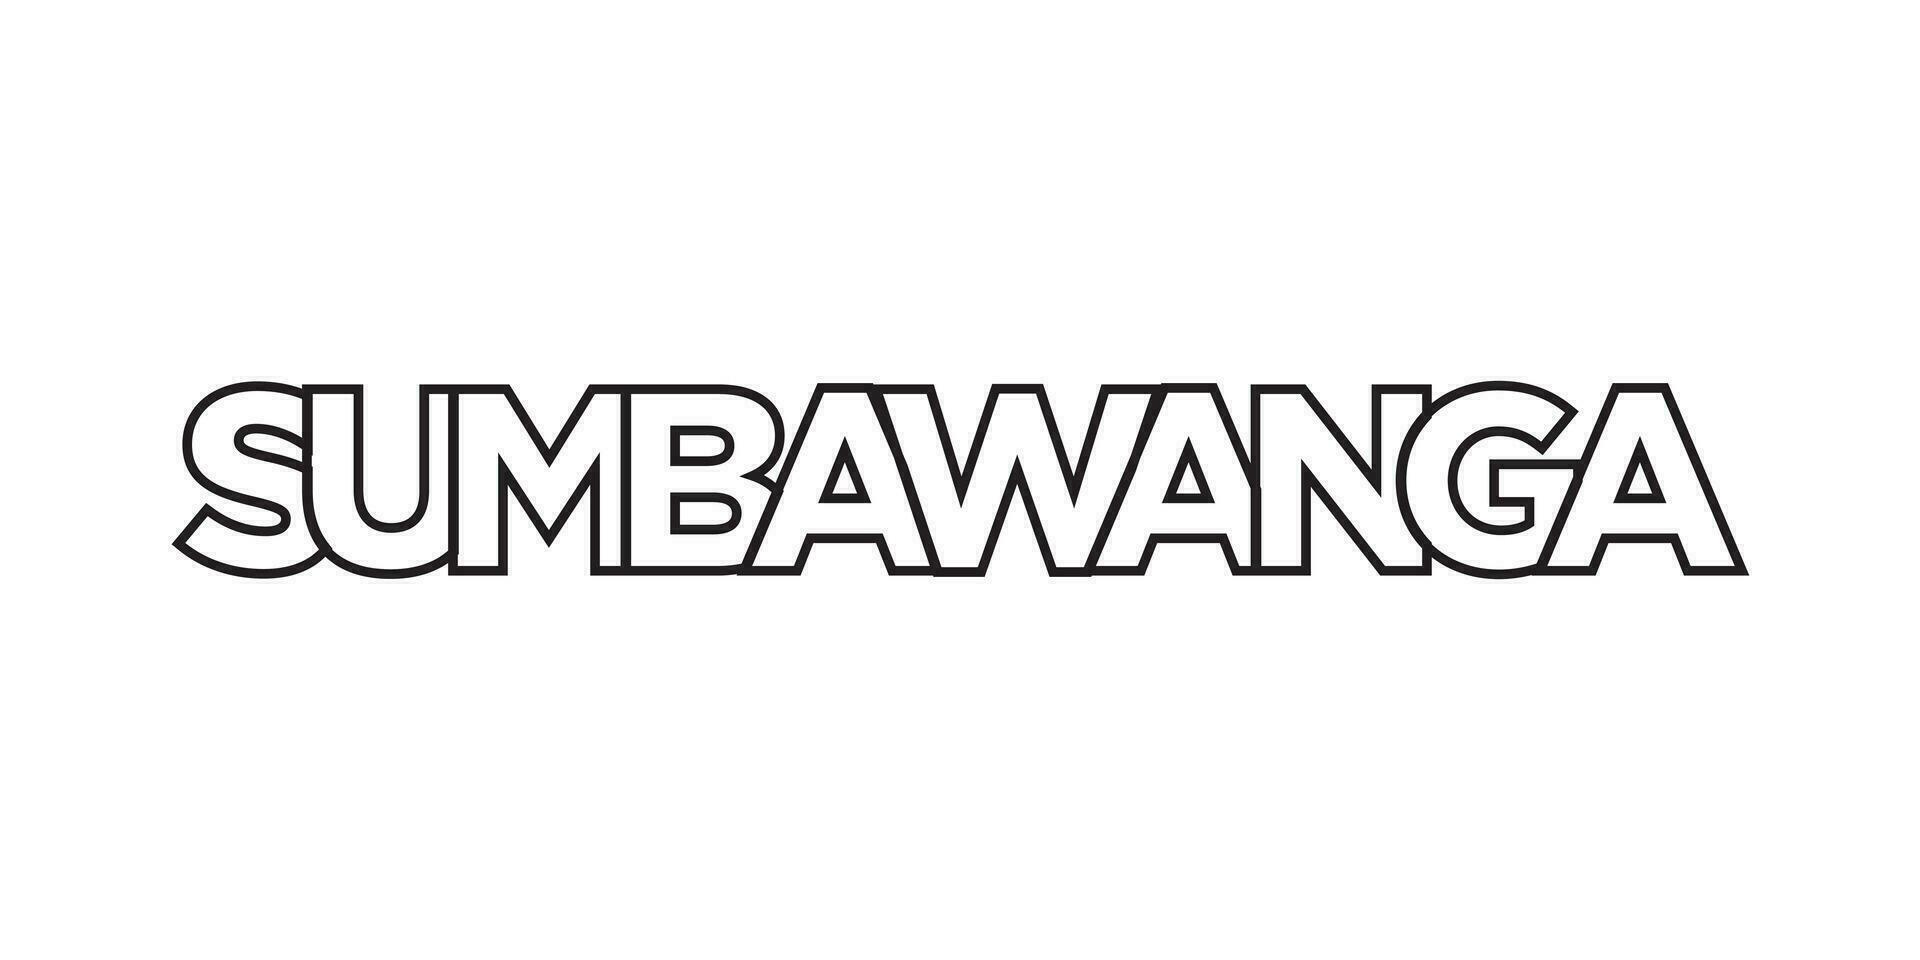 Sumbawanga im das Tansania Emblem. das Design Eigenschaften ein geometrisch Stil, Vektor Illustration mit Fett gedruckt Typografie im ein modern Schriftart. das Grafik Slogan Beschriftung.